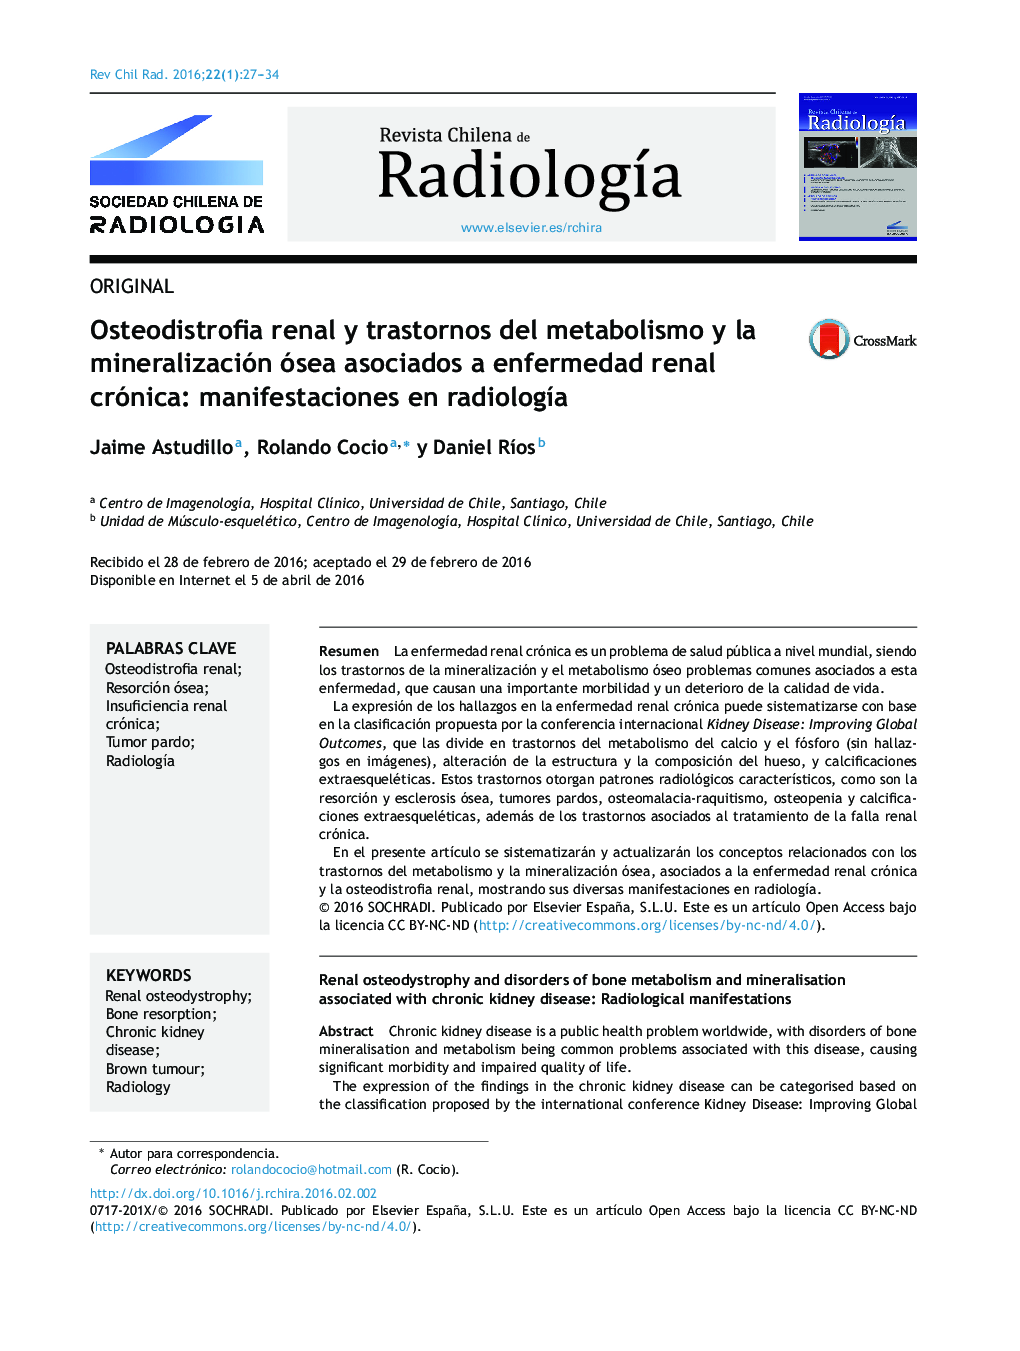 Osteodistrofia renal y trastornos del metabolismo y la mineralización ósea asociados a enfermedad renal crónica: manifestaciones en radiología